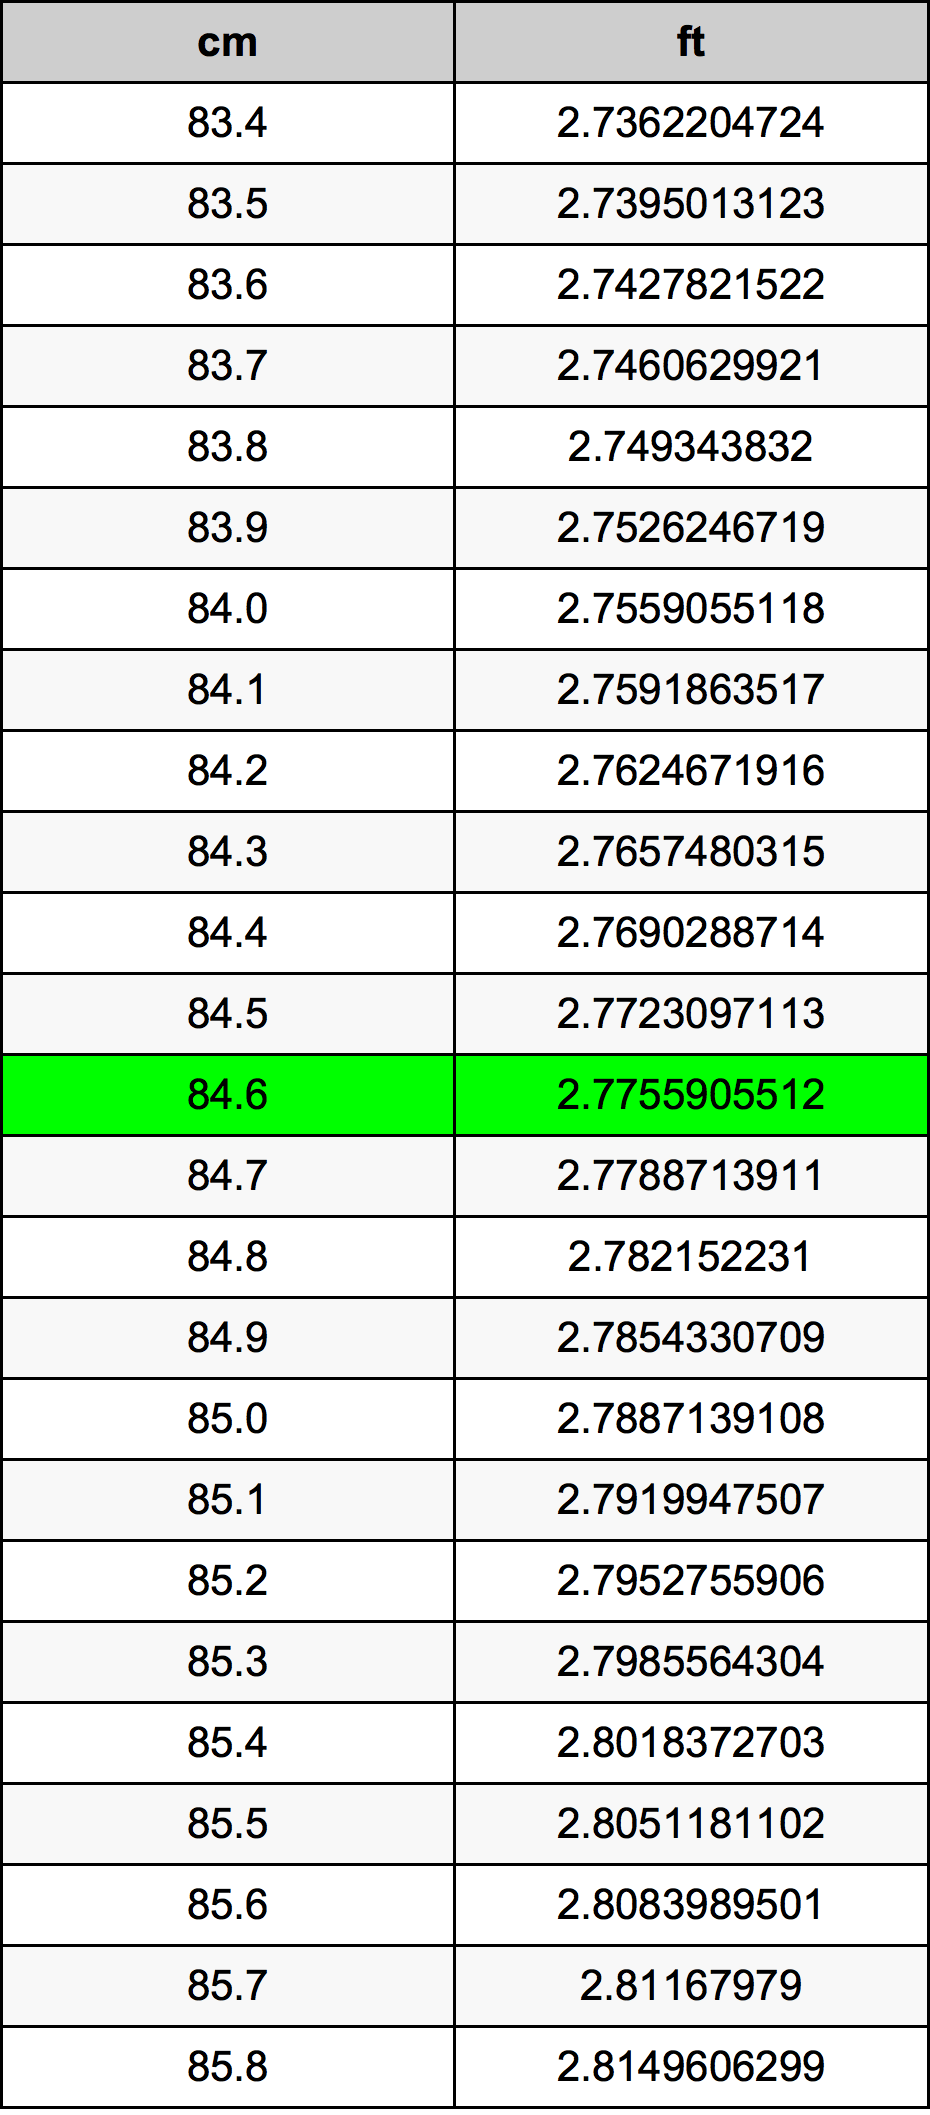 84.6 Centiméter átszámítási táblázat